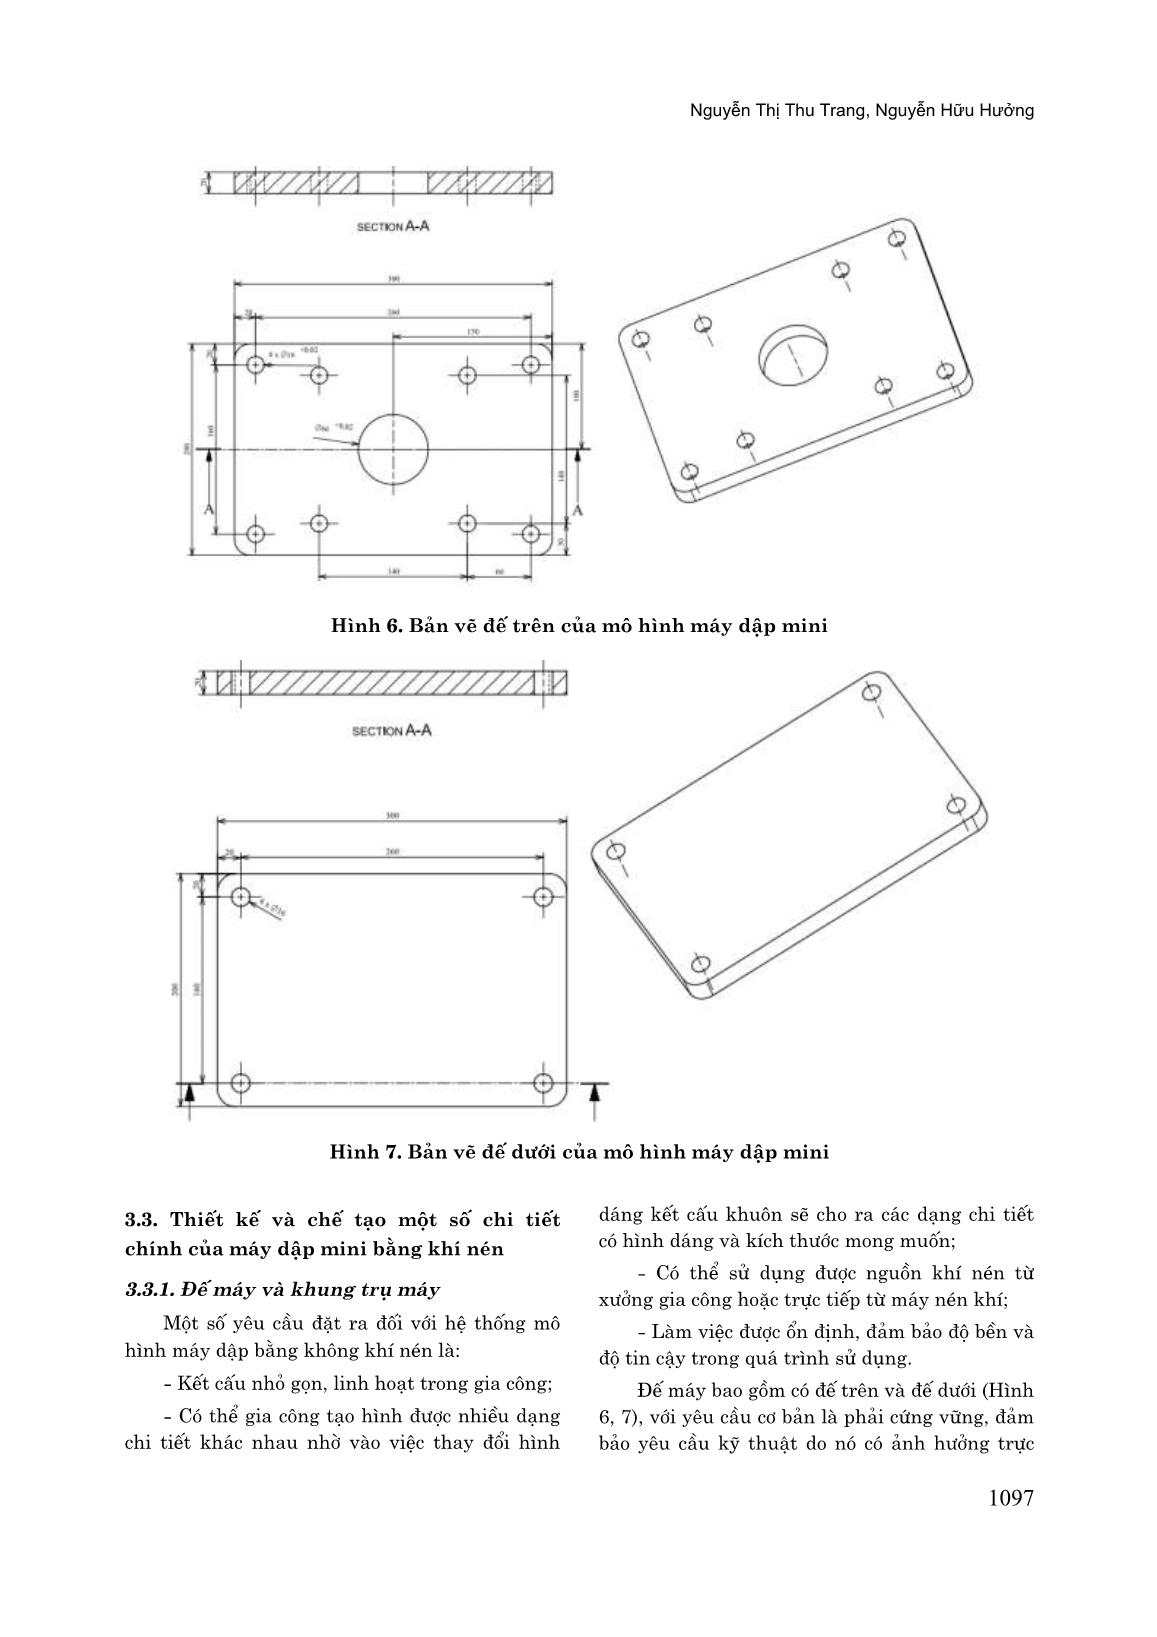 Thiết kế và chế tạo mô hình máy dập mini sử dụng khí nén để biến dạng phôi kim loại tấm trang 6